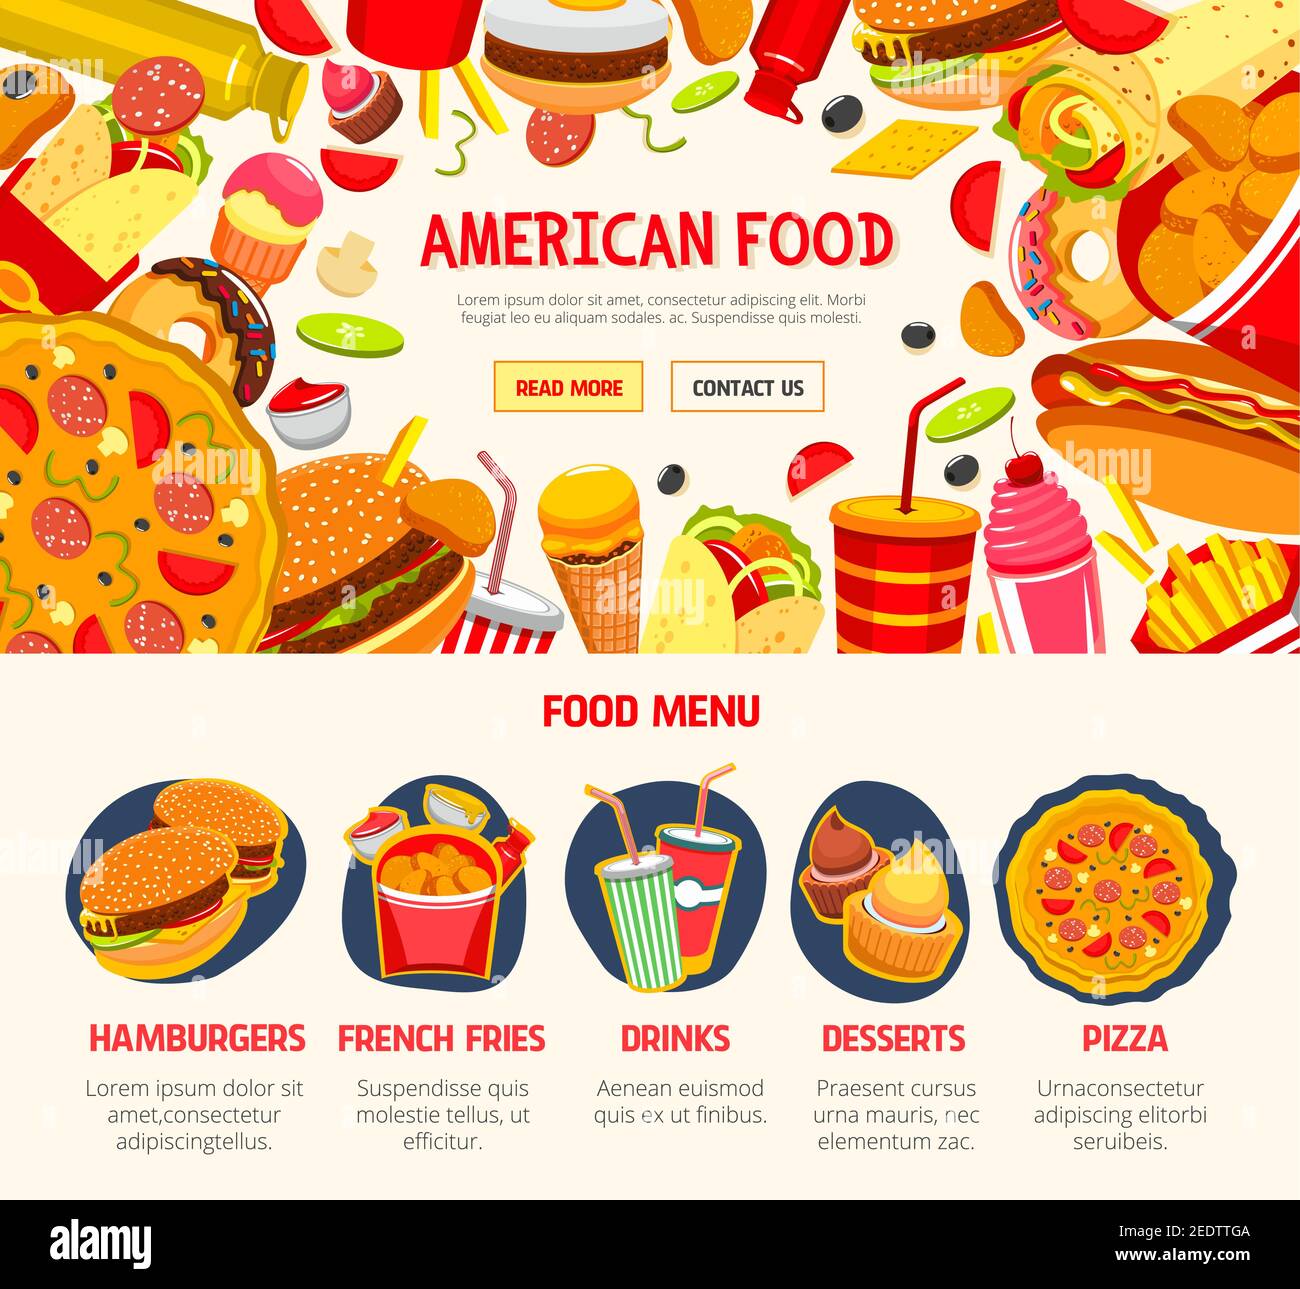 Modèle de bannière de restauration rapide. Menu de restauration rapide avec hamburger, hot dog, pizza, soda, beignet, frites, sandwich, cheeseburger, crème glacée et Illustration de Vecteur